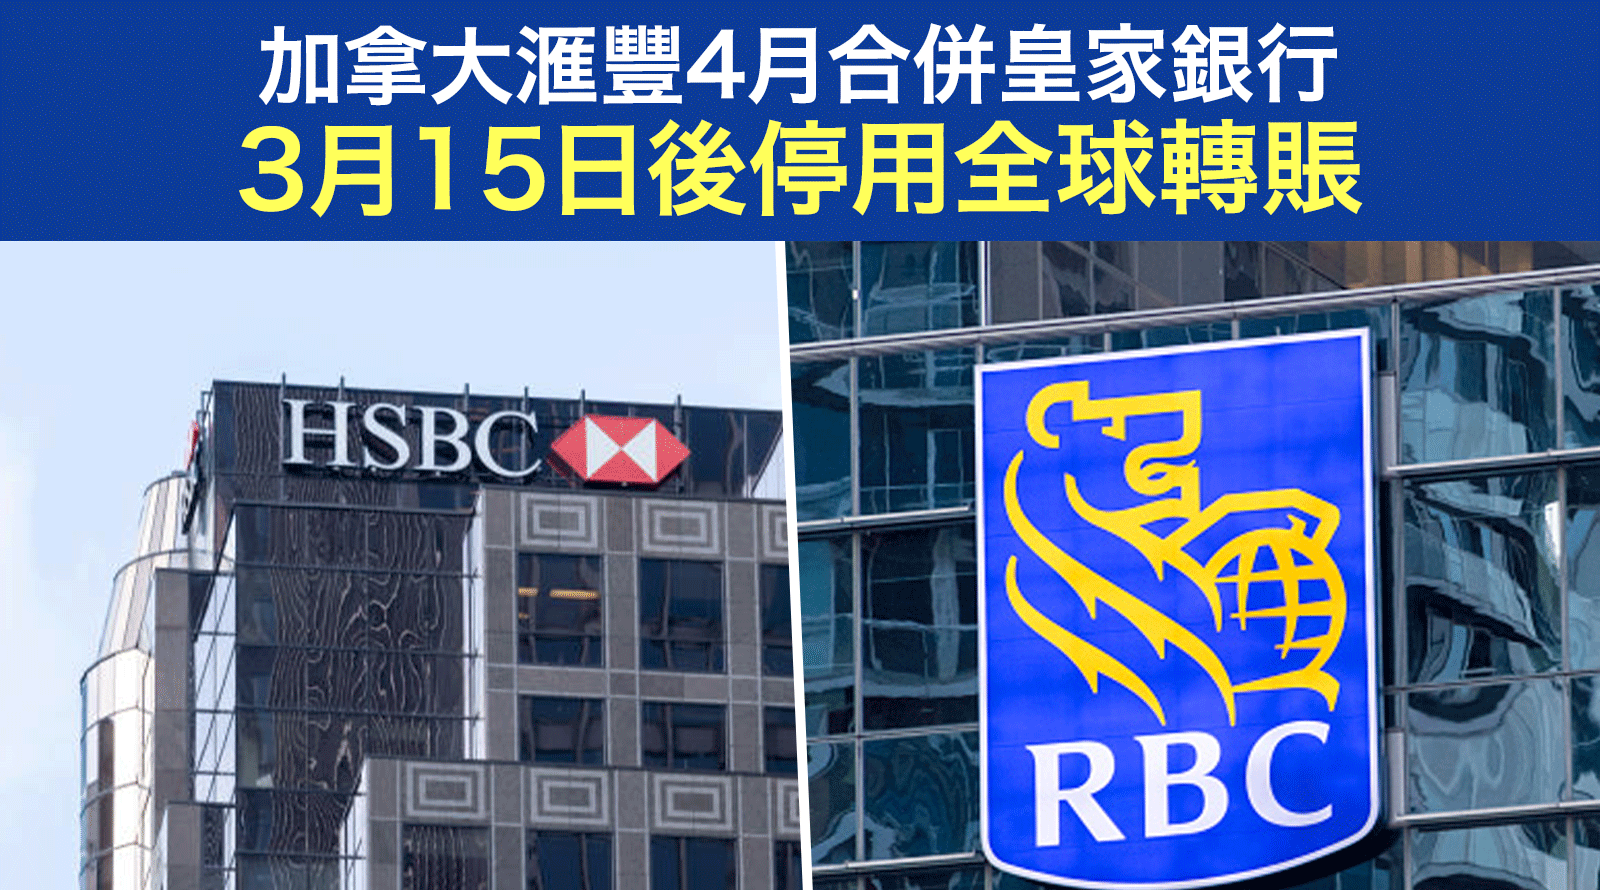 加拿大滙豐4月合併皇家銀行-3月15日後停用全球轉賬HSBC-Canada-RBC-Global-Transfer